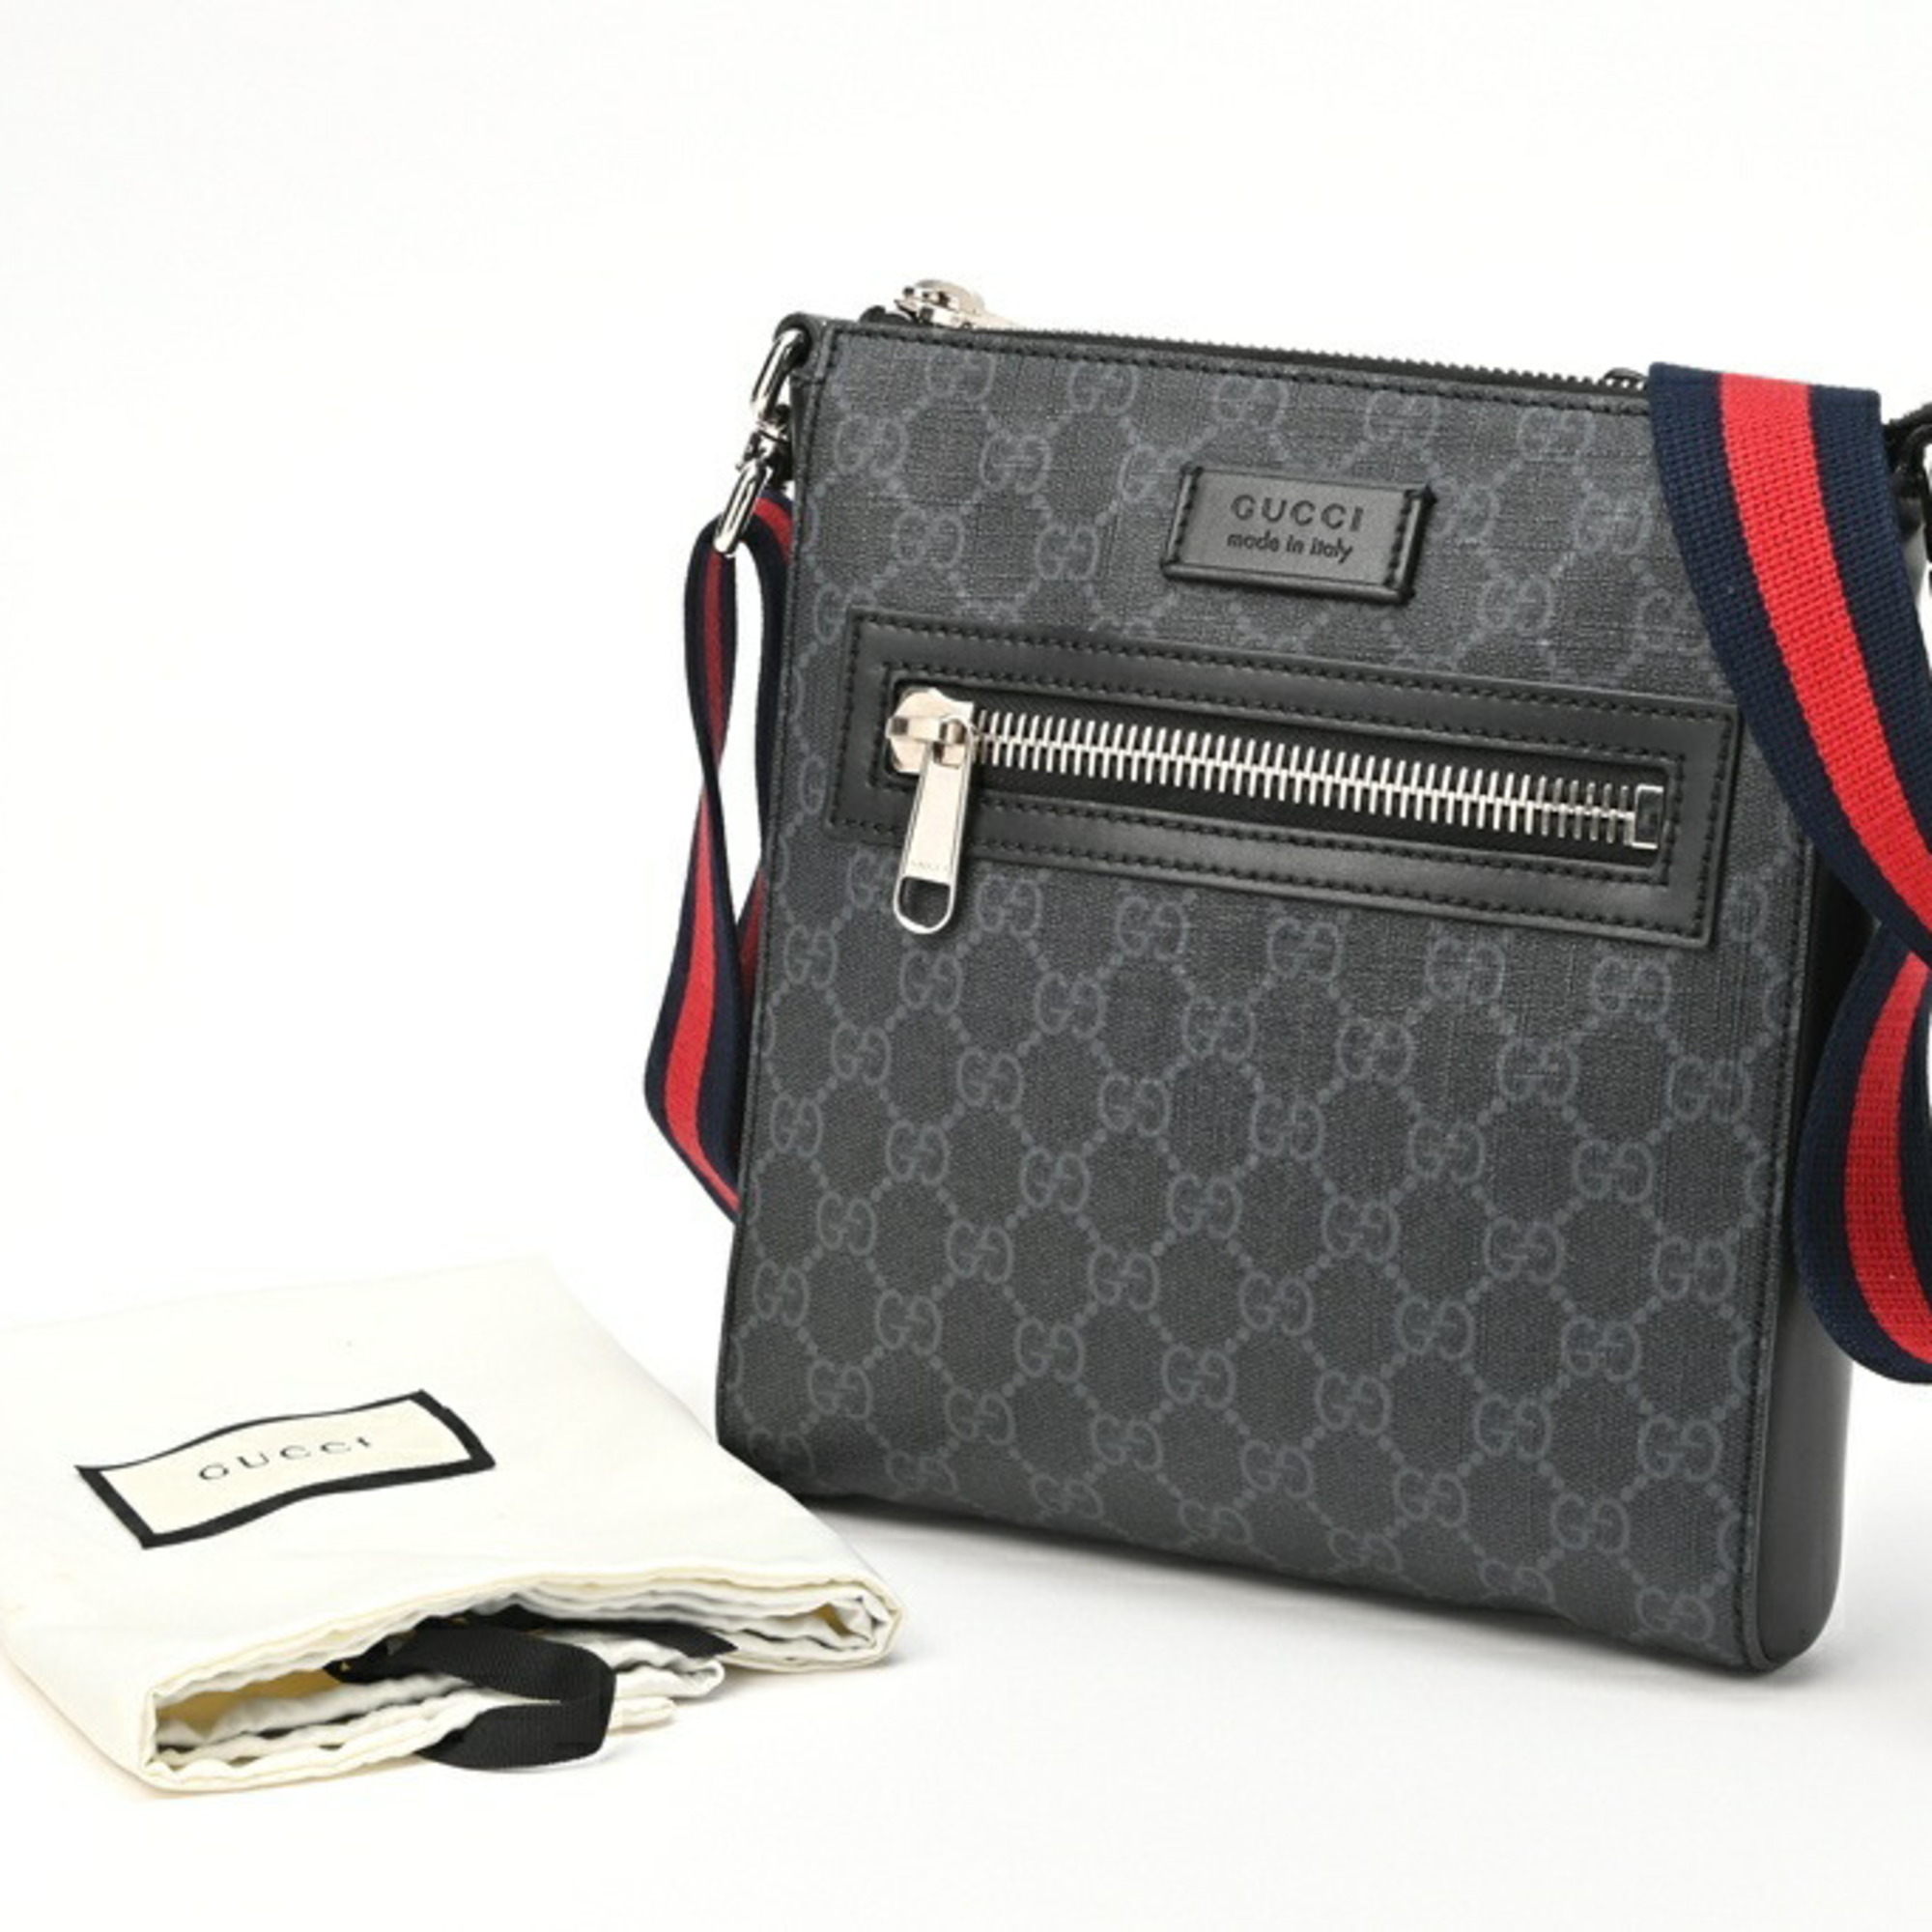 Gucci GG Supreme Small Bag 523599 K5RLN 1095 Black Gray T-155057